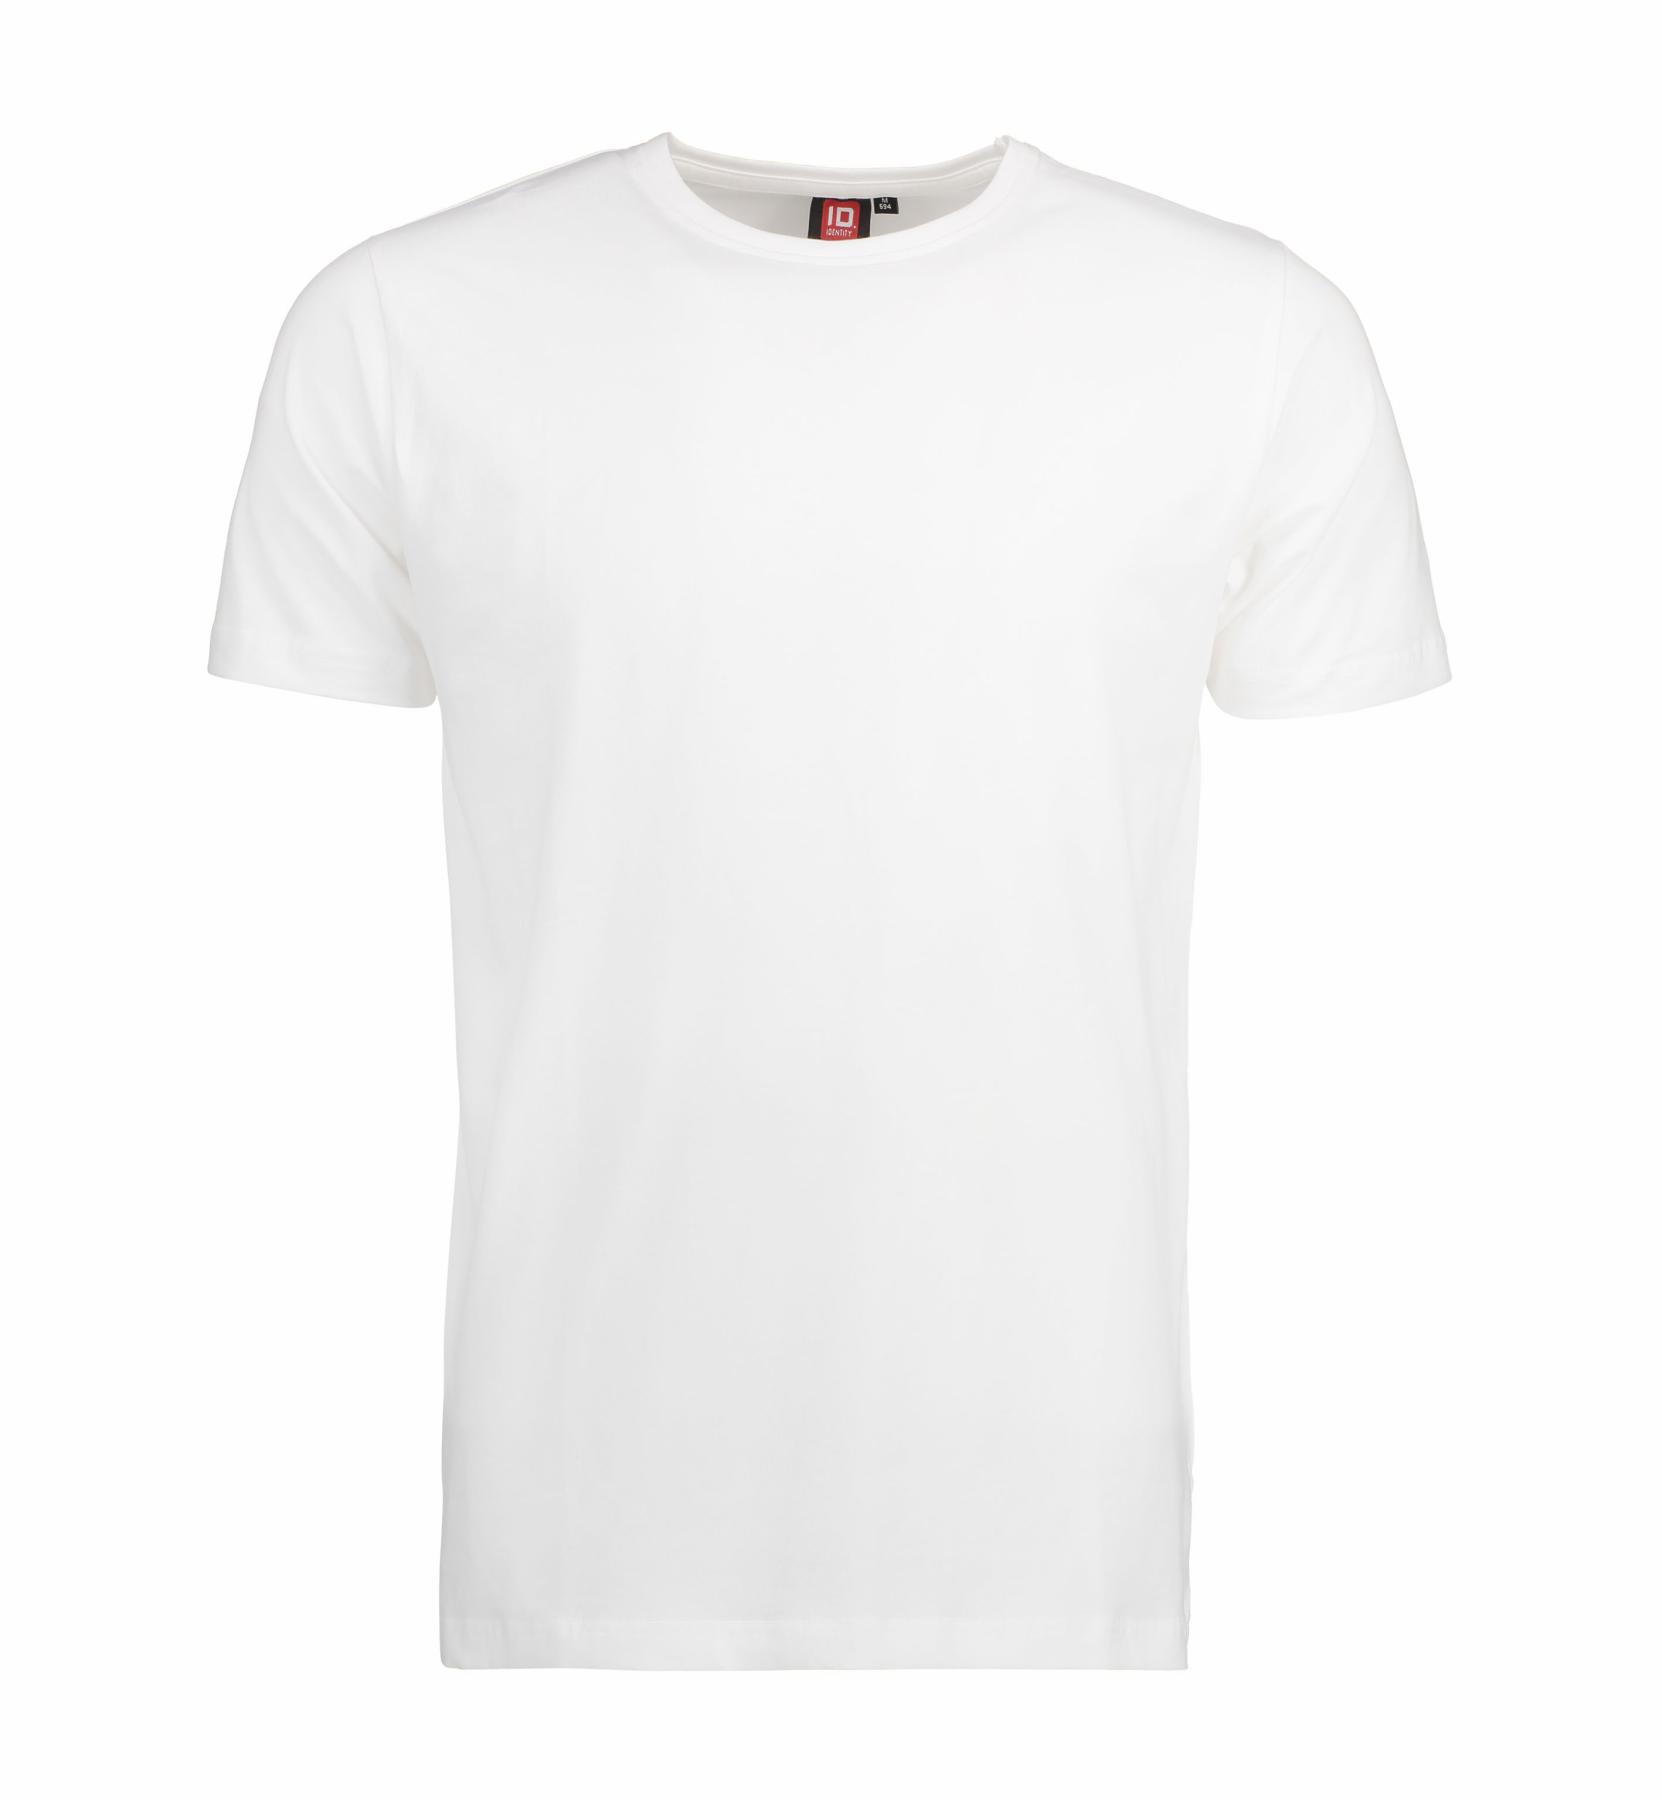 Stretch Men's T-Shirt 190-200 g/m² ID Identity® White 3XL